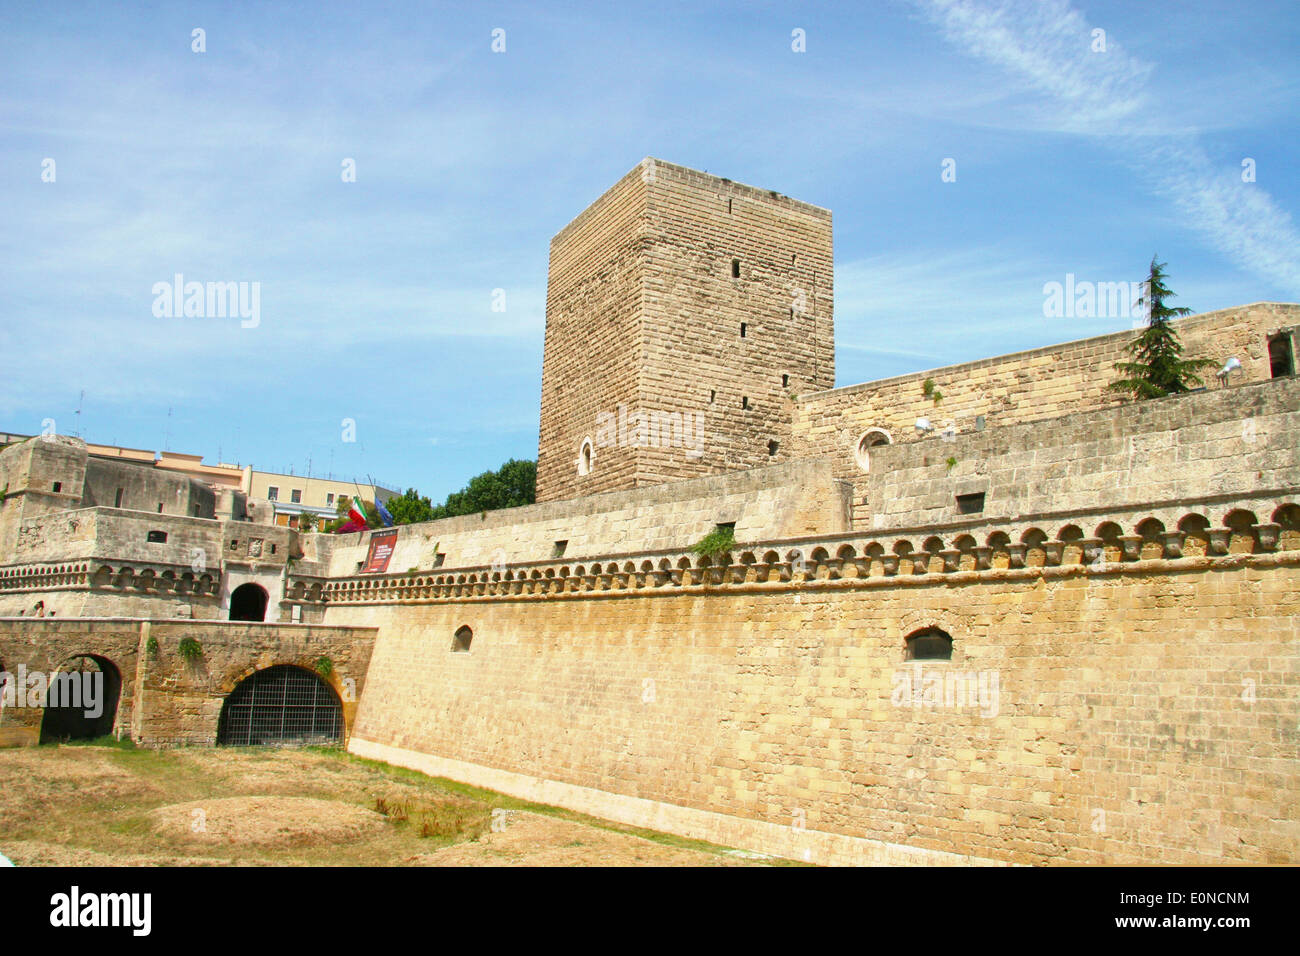 Swabian Castle or Castello Svevo, (Norman-Hohenstaufen Castle), Bari, Apulia, Italy Stock Photo